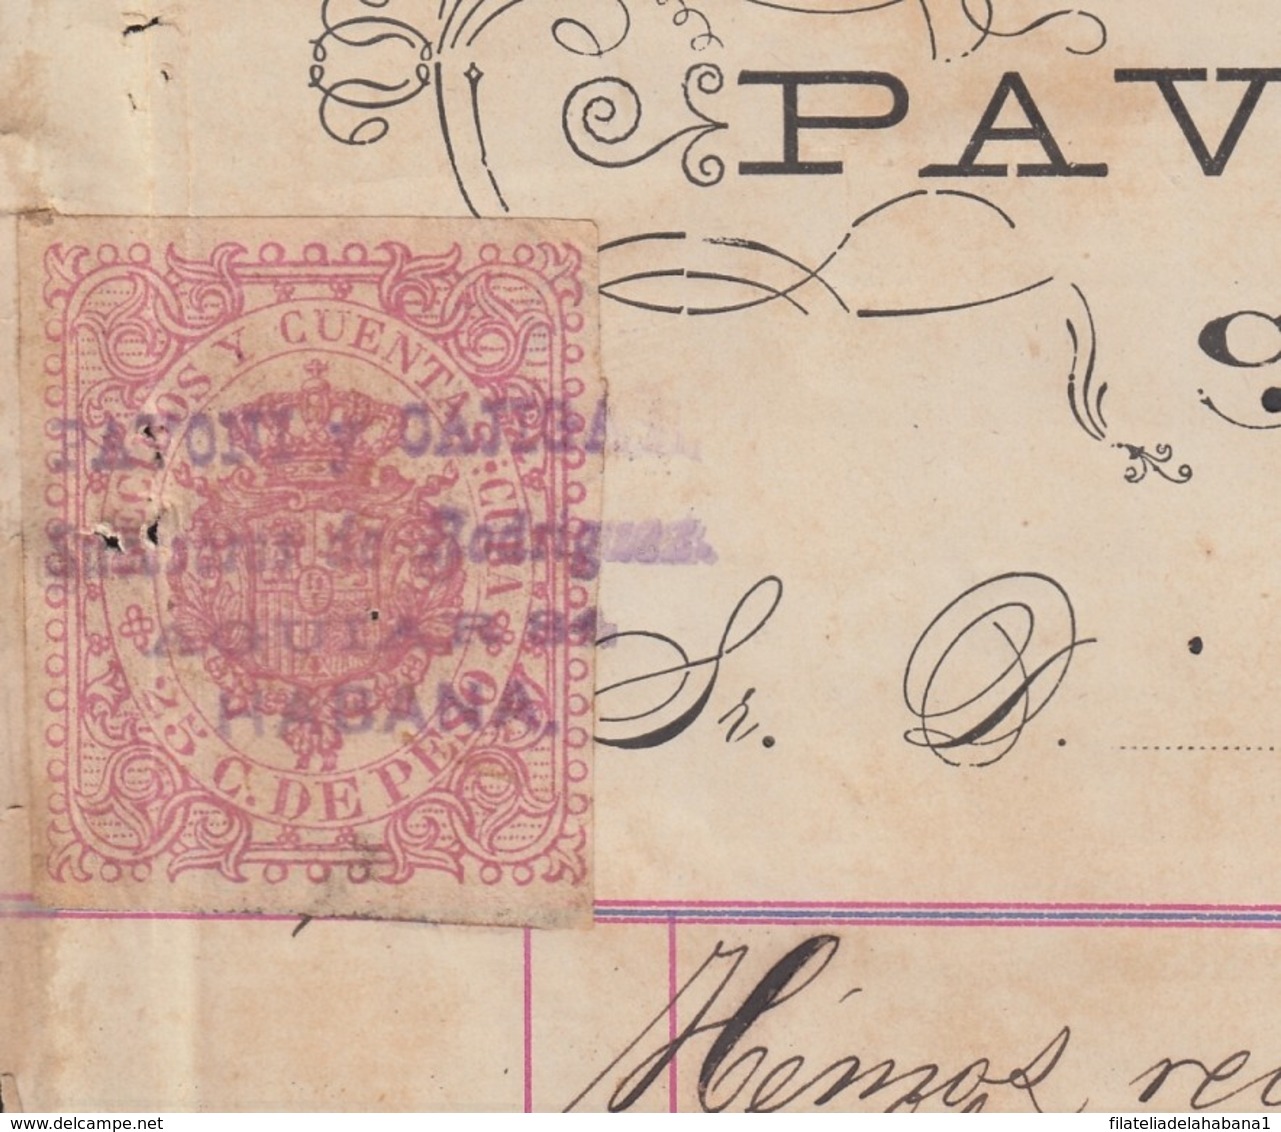 REC-134 CUBA SPAIN ESPAÑA (LG1642) RECIBOS REVENUE 1884. SASTRERIA PAVONI COSTUMES HARDWARE INVOICE. - Strafport